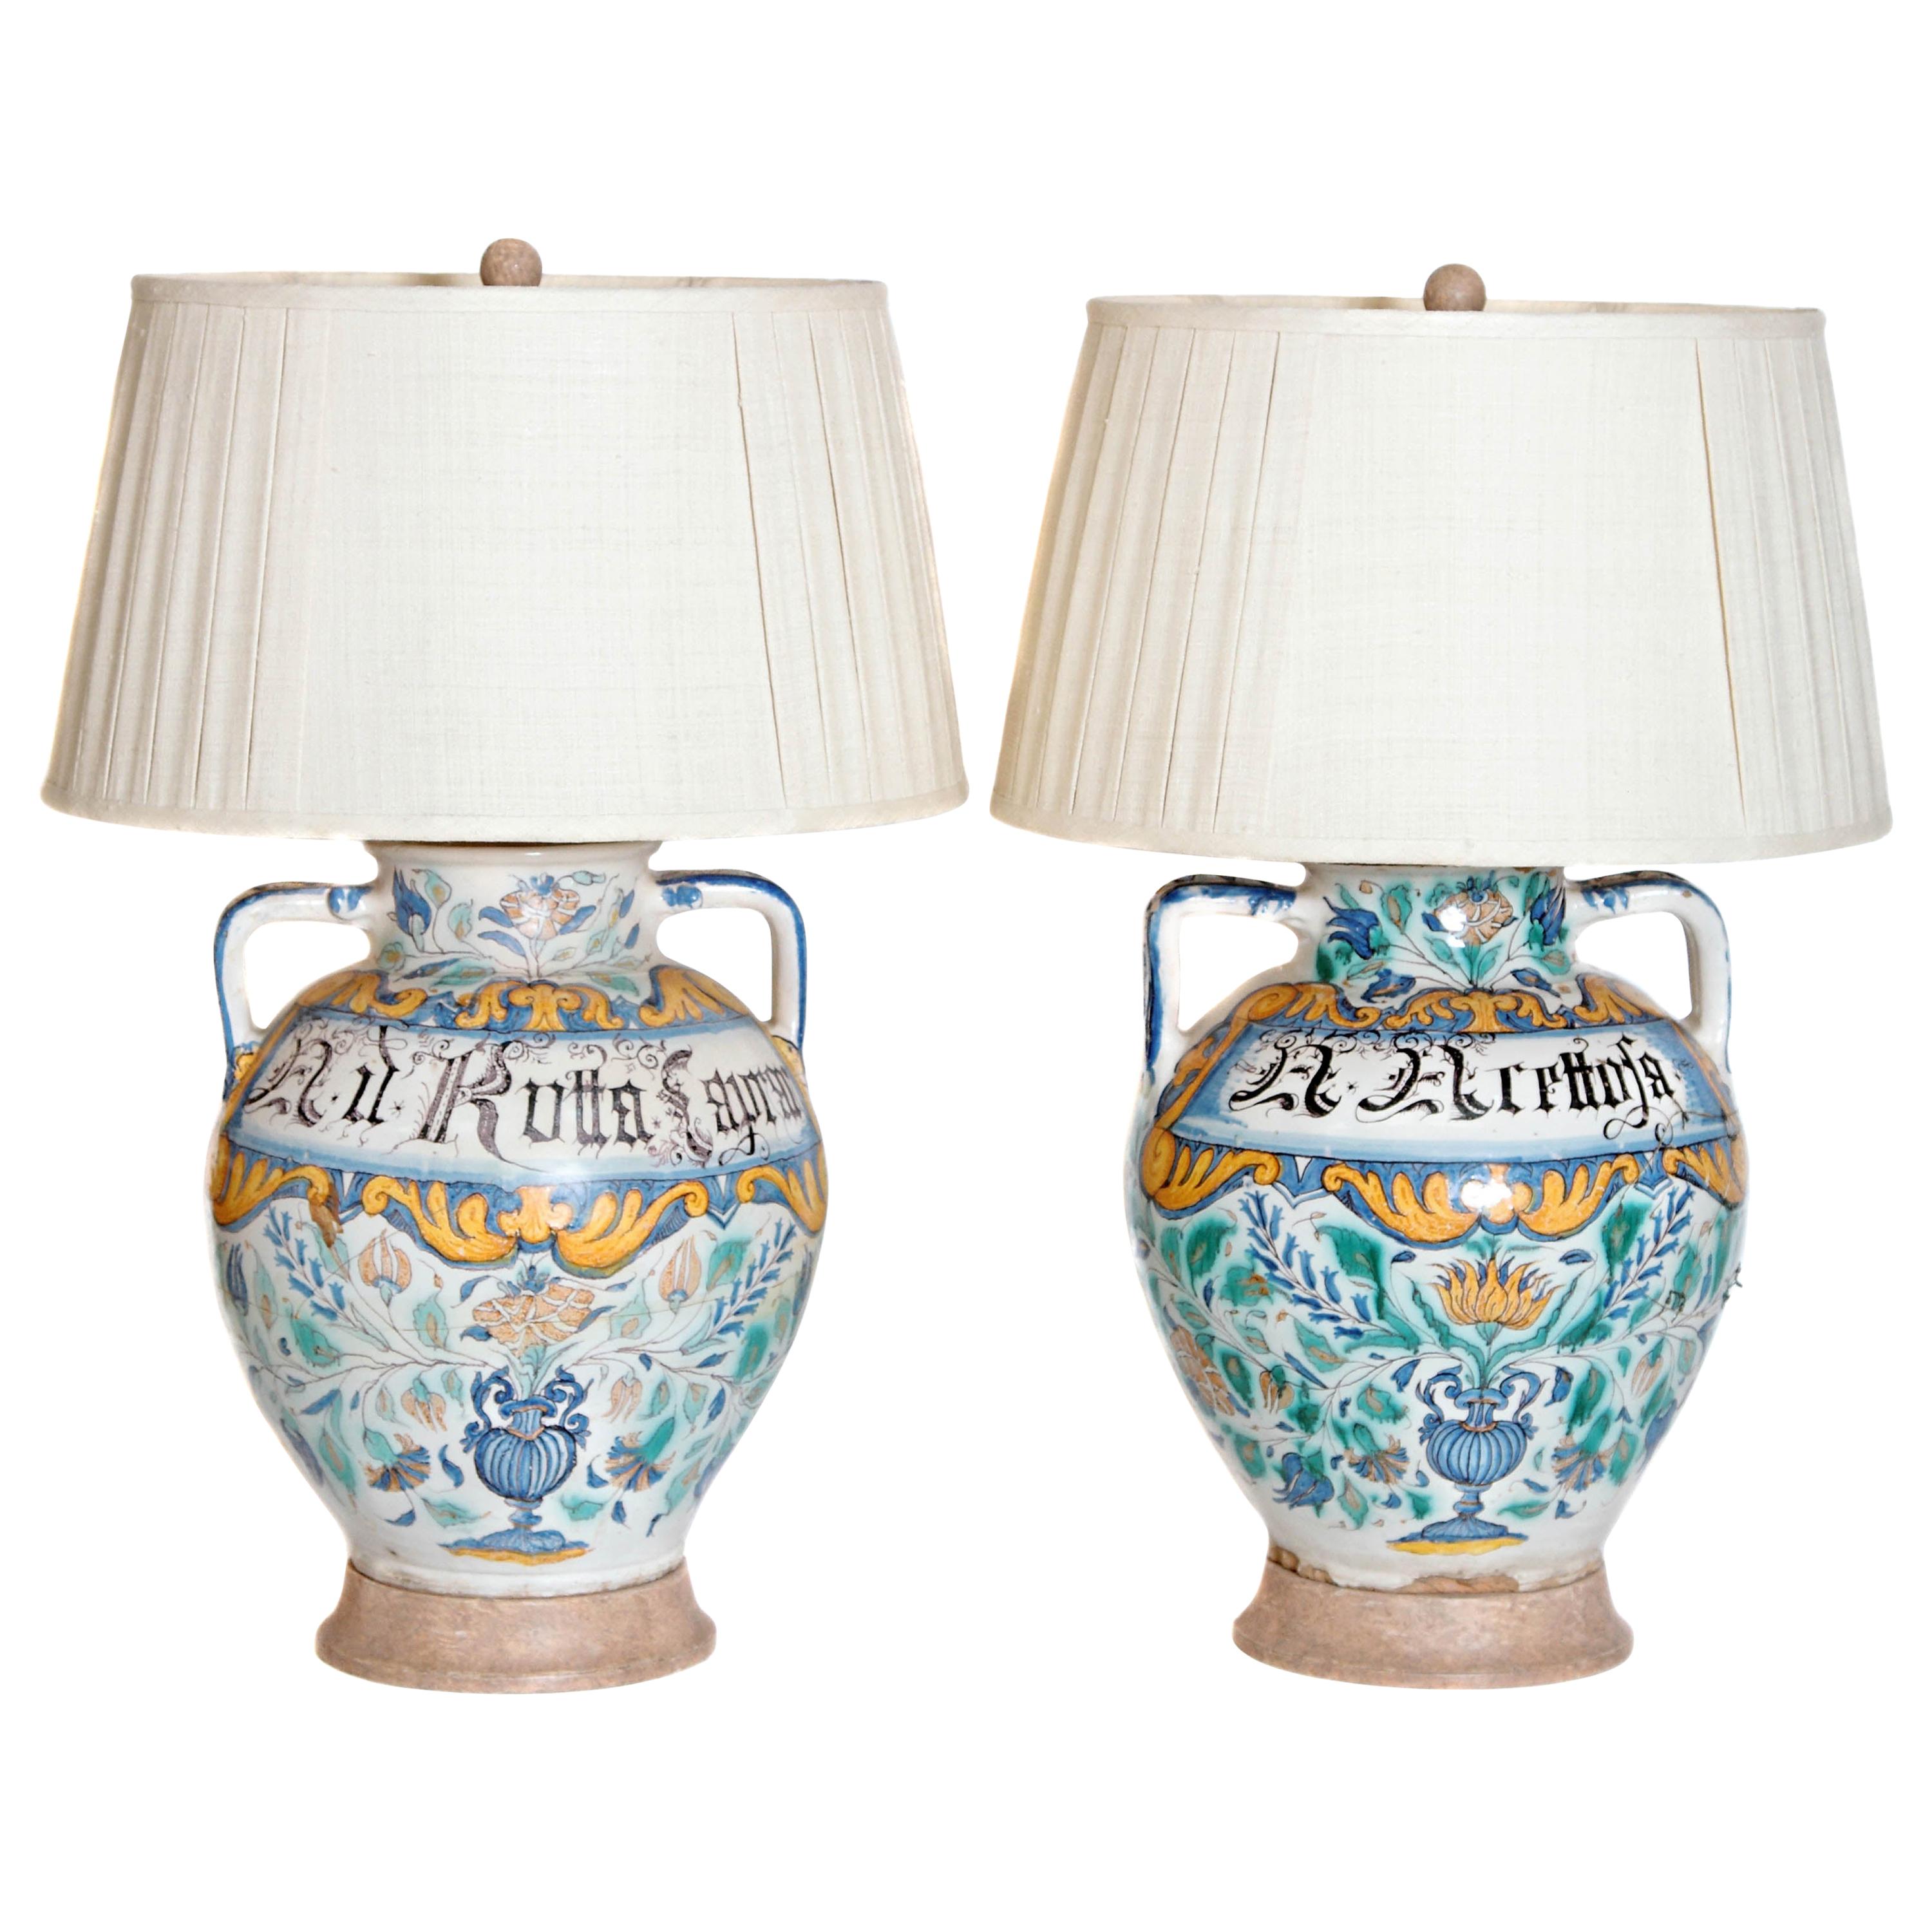 Paire de vases Maiolica italiens du 17ème siècle convertis en lampes